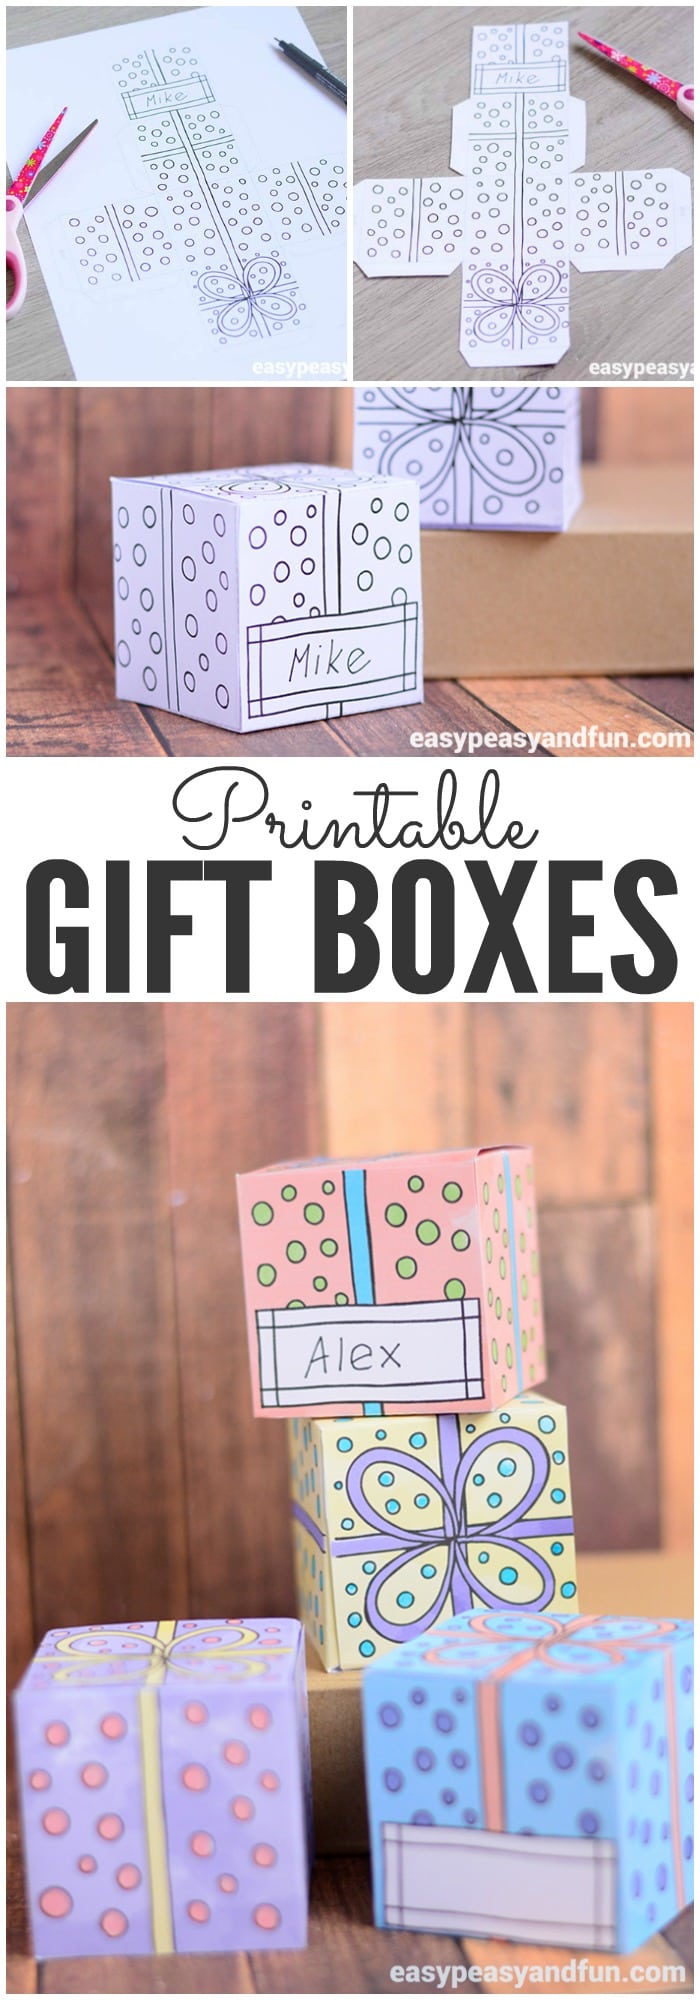 Printable Gift Boxes